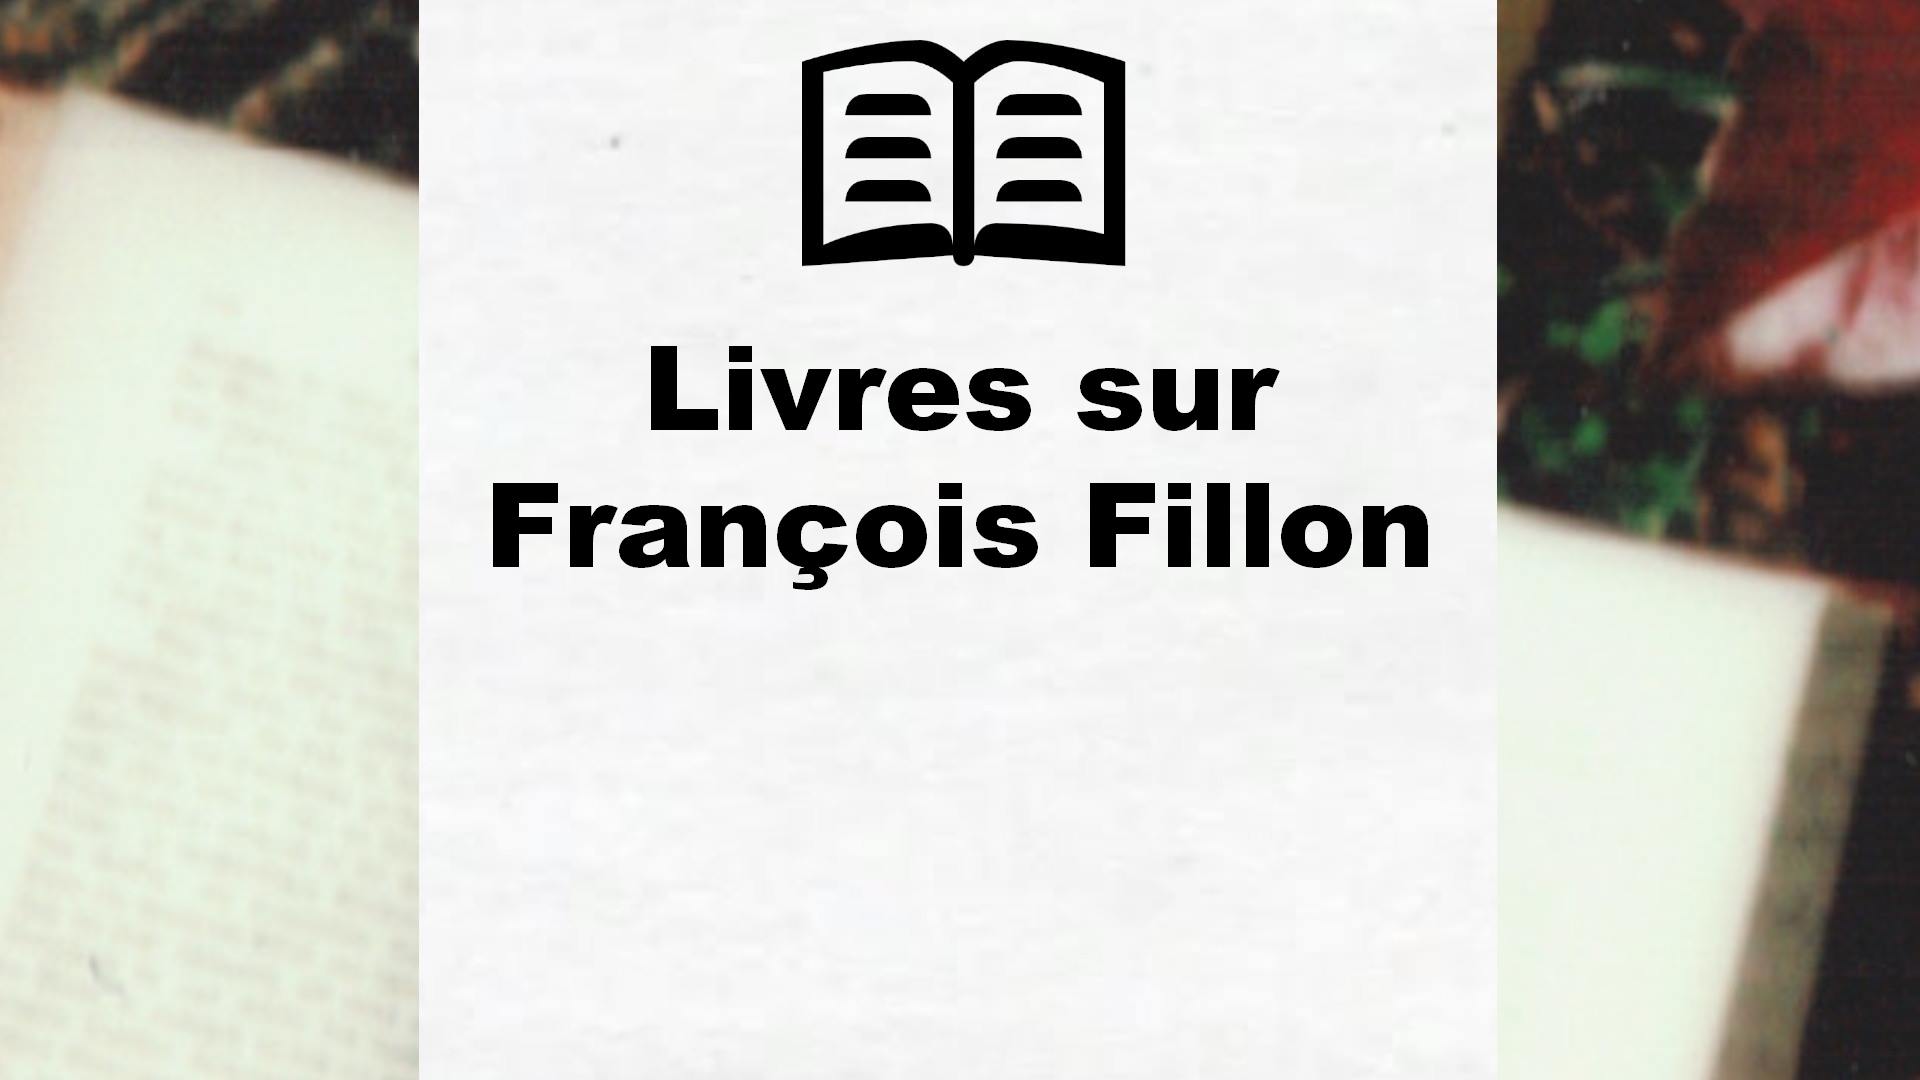 Livres sur François Fillon